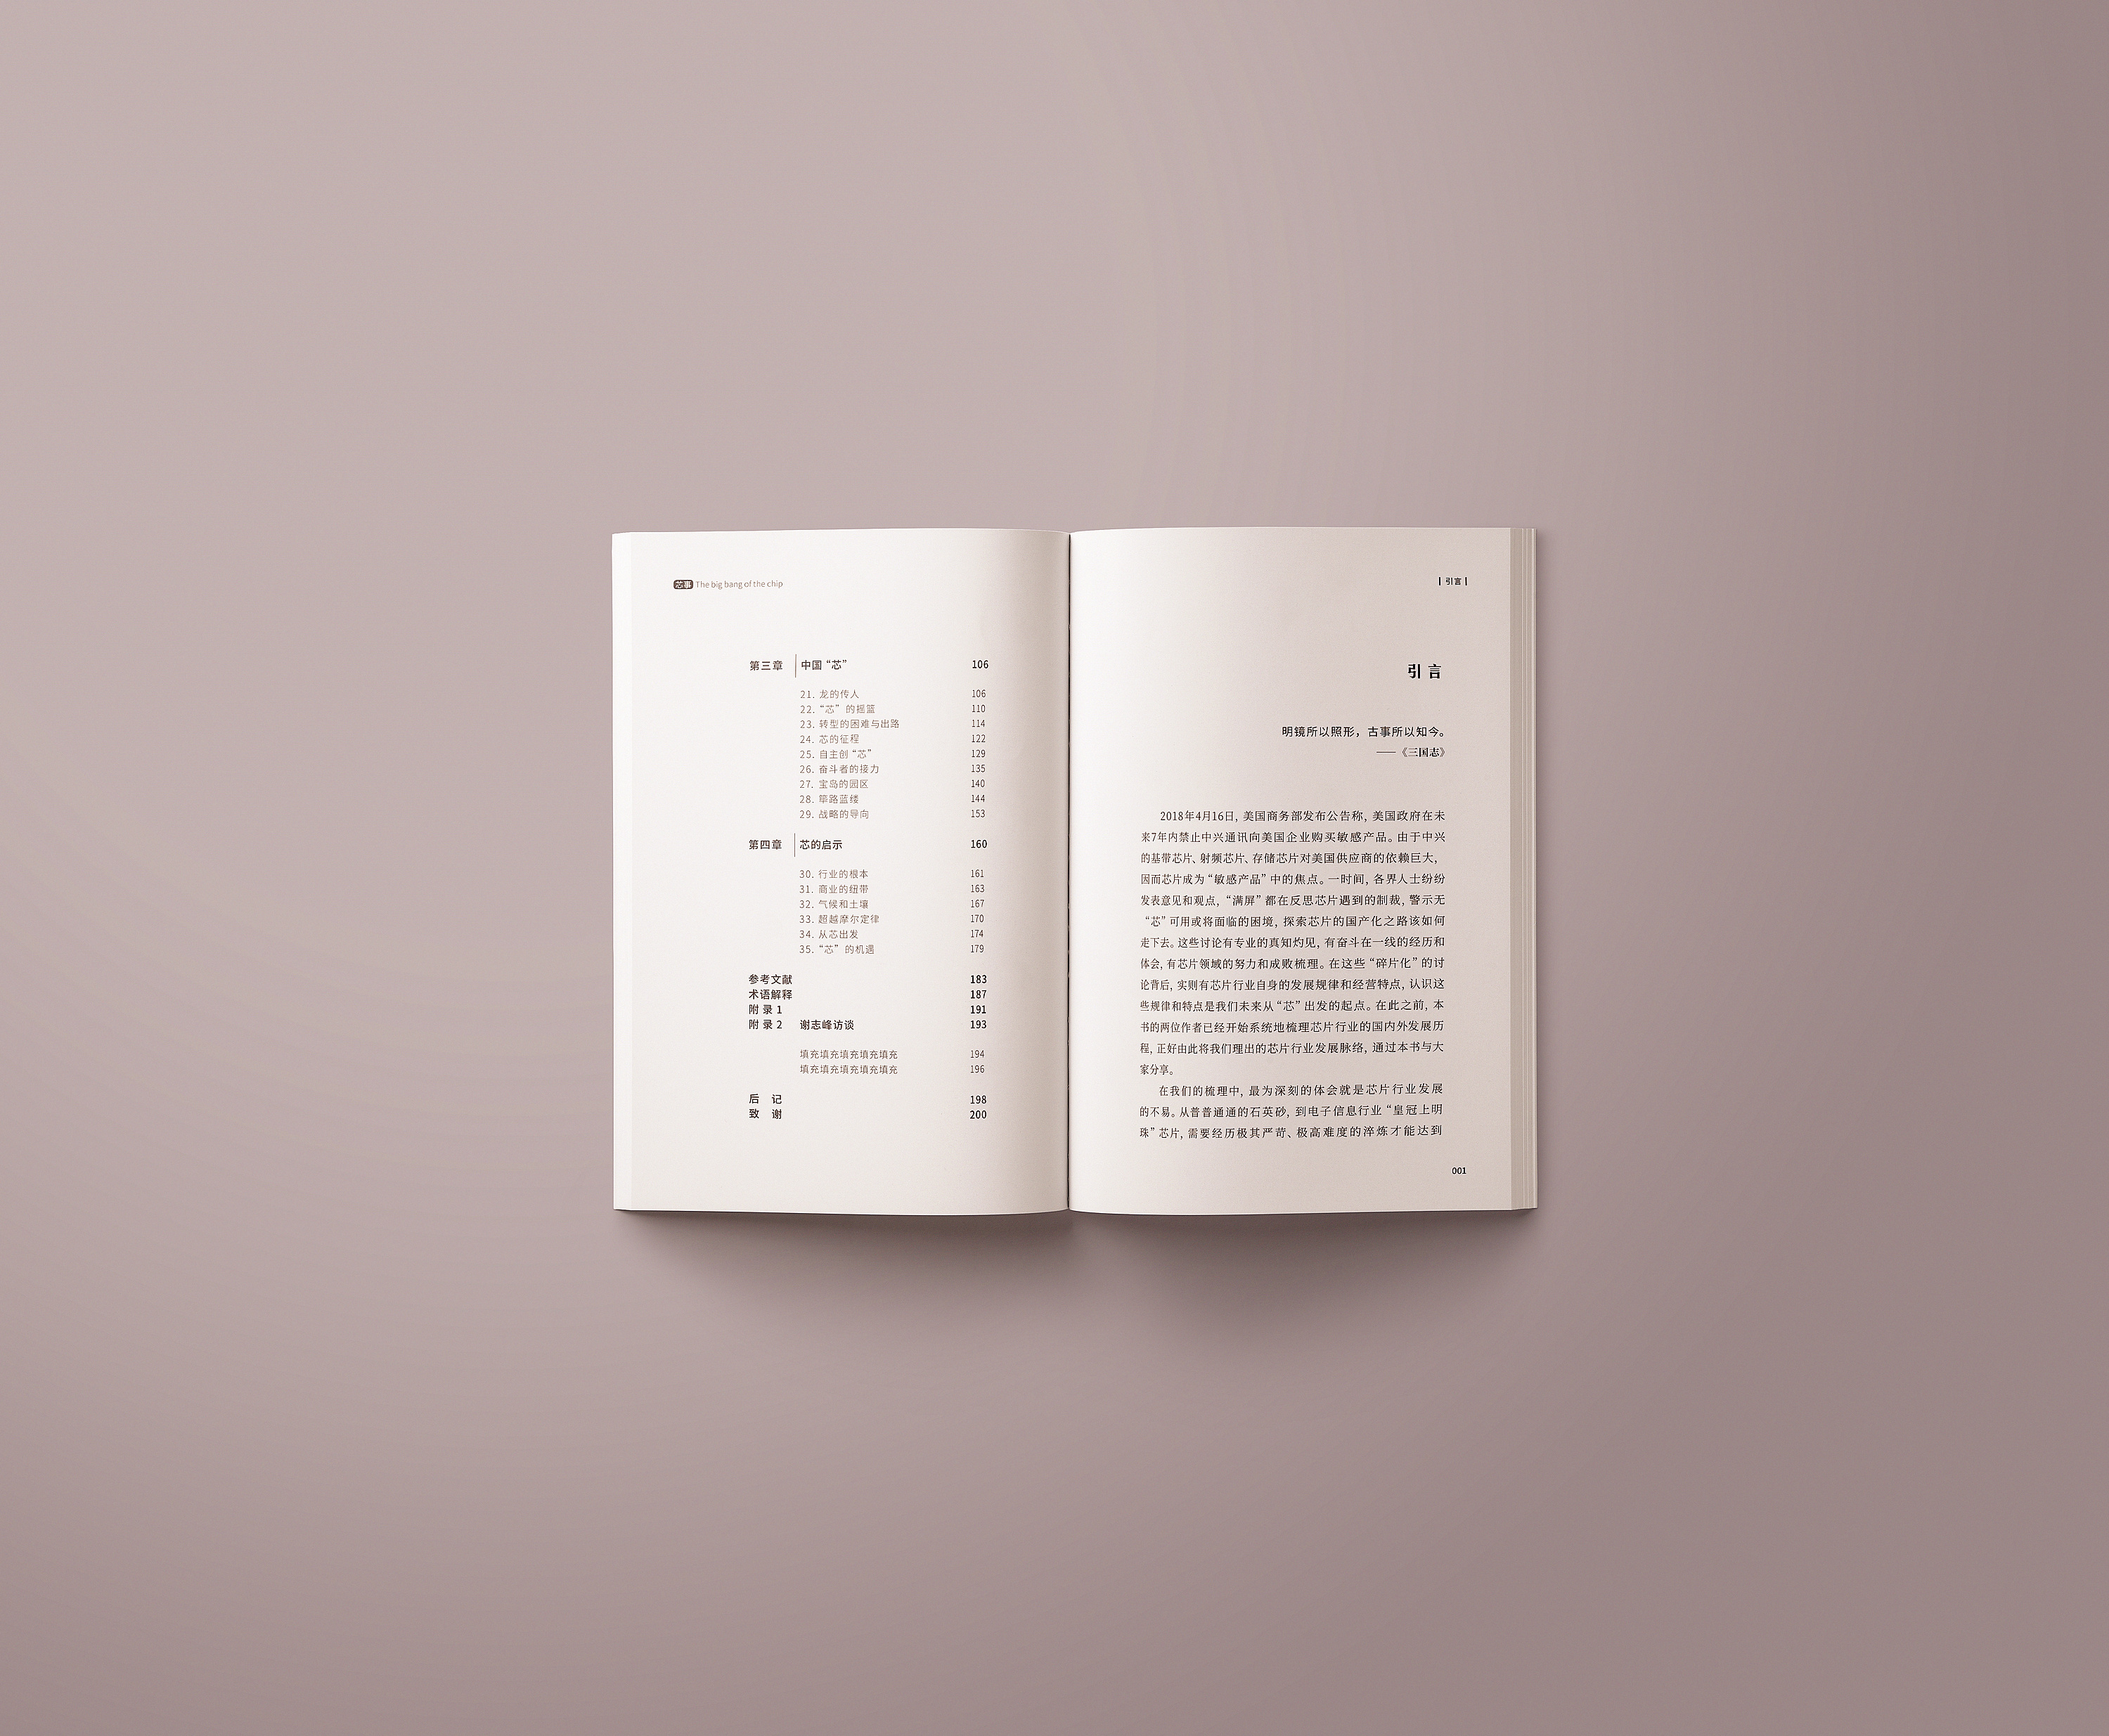 平面书籍装帧方案稿 内文版式设计